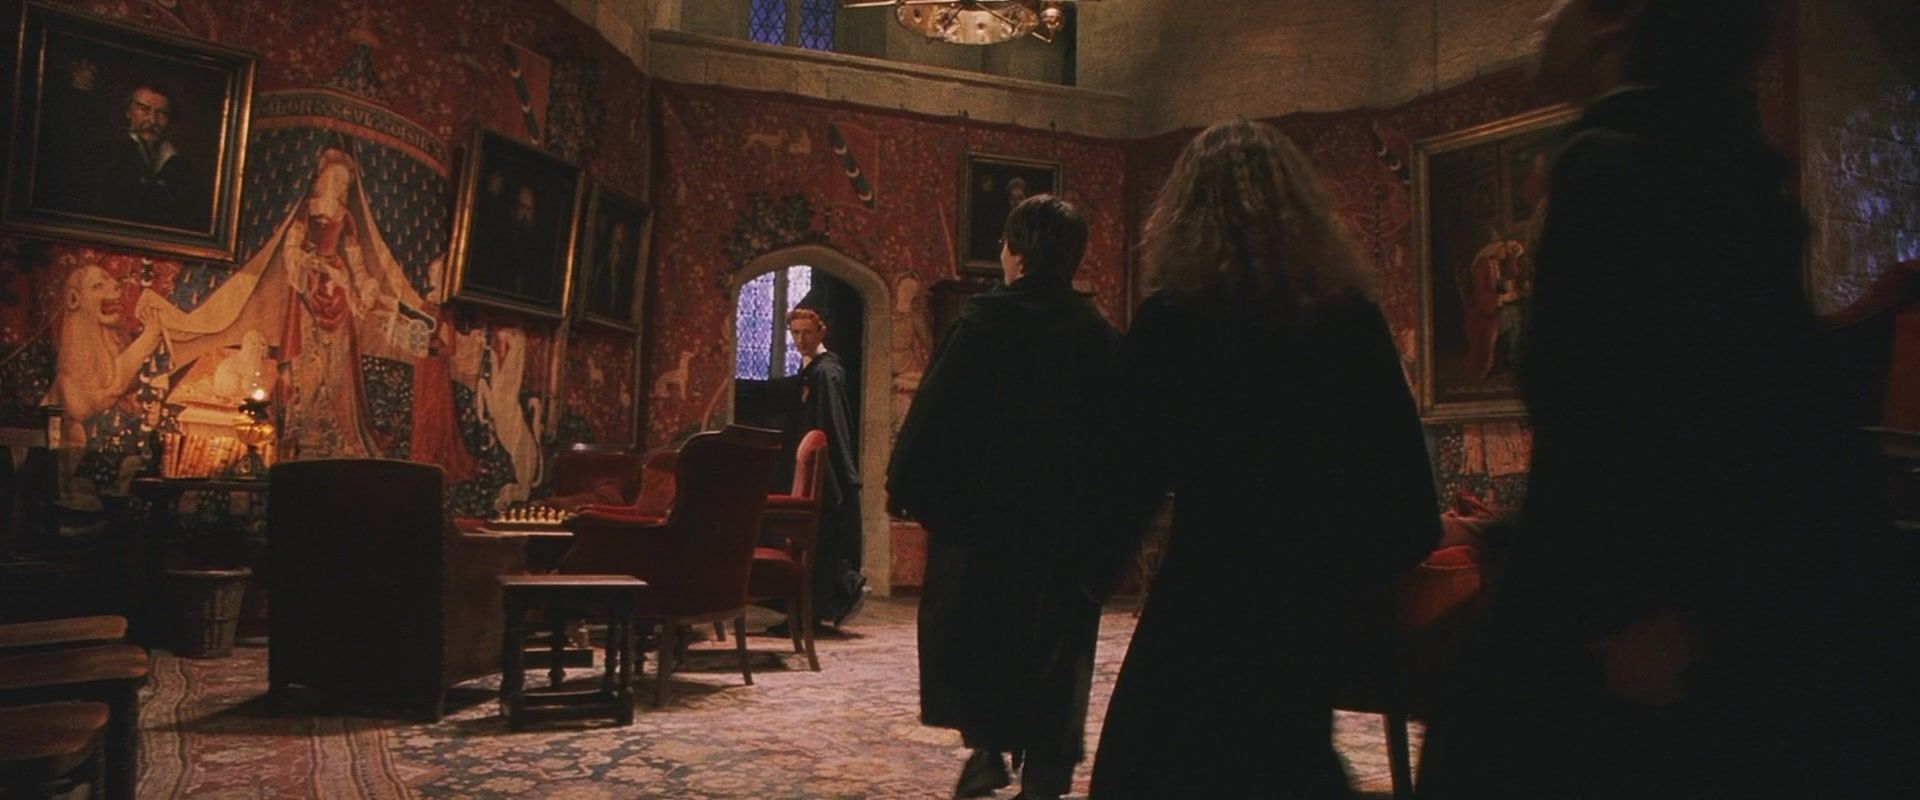 La Salle commune de Gryffondor, dans le film "Harry Potter à l’école des sorciers"